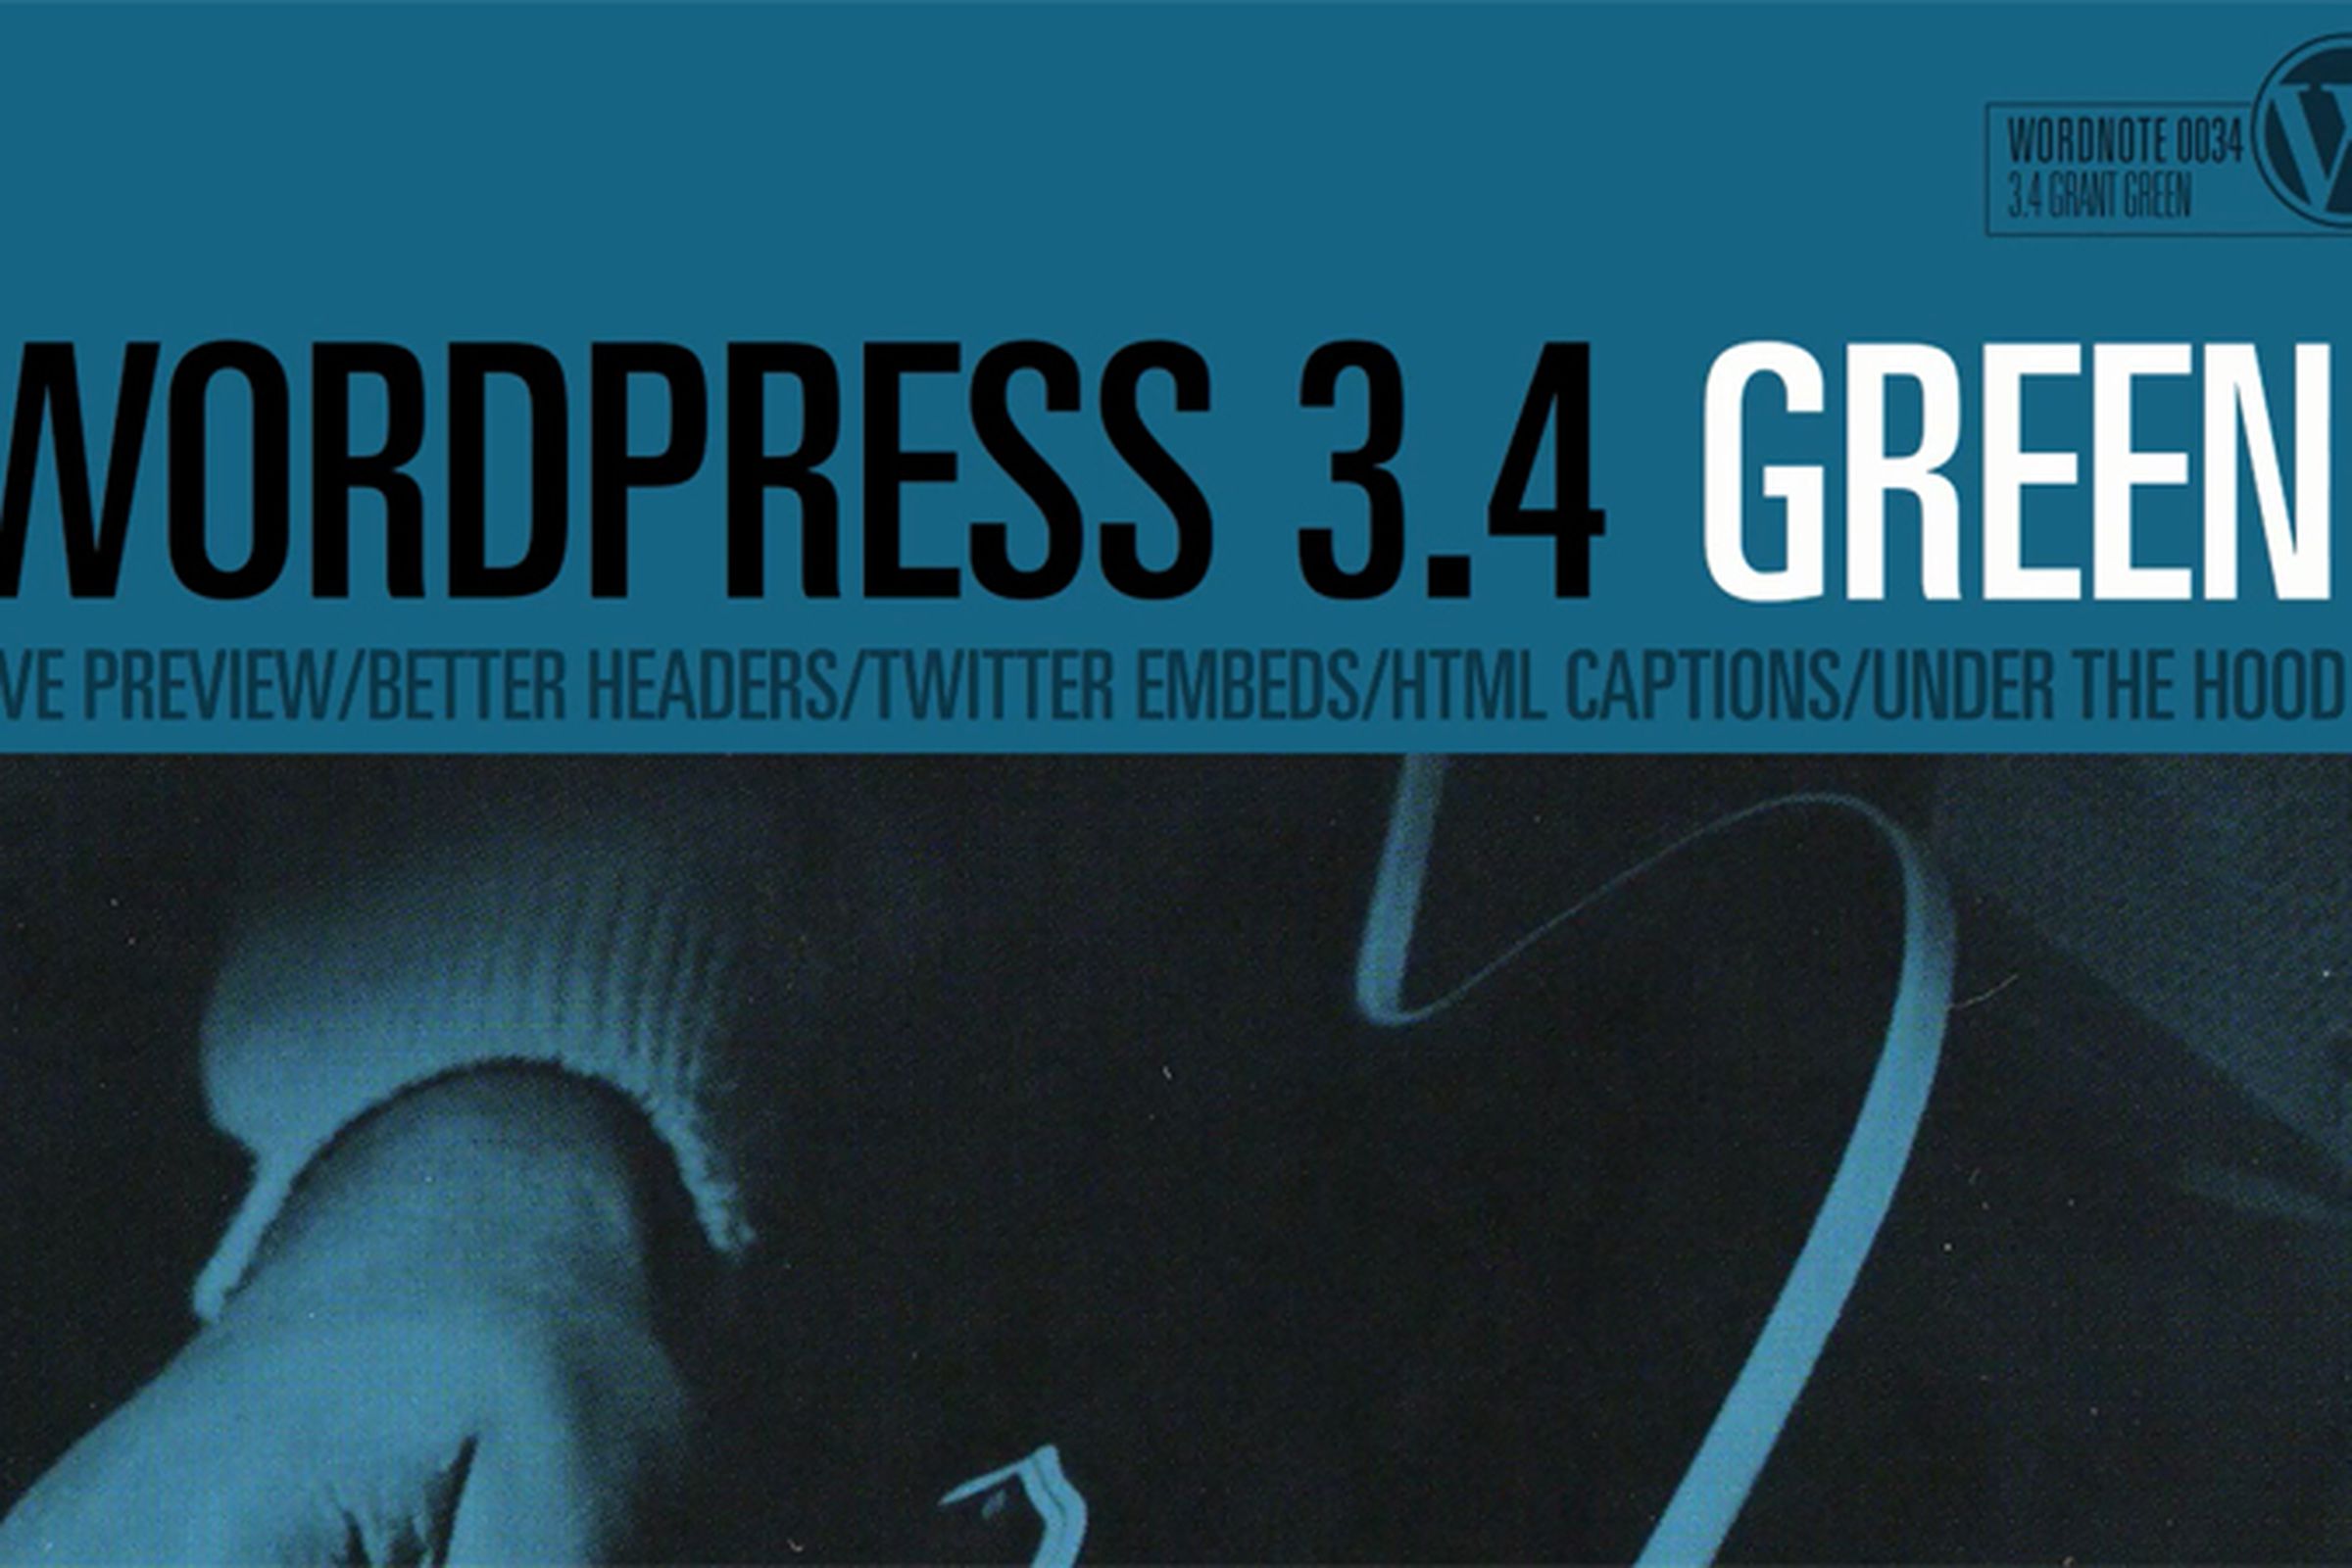 wordress 3.4 green update